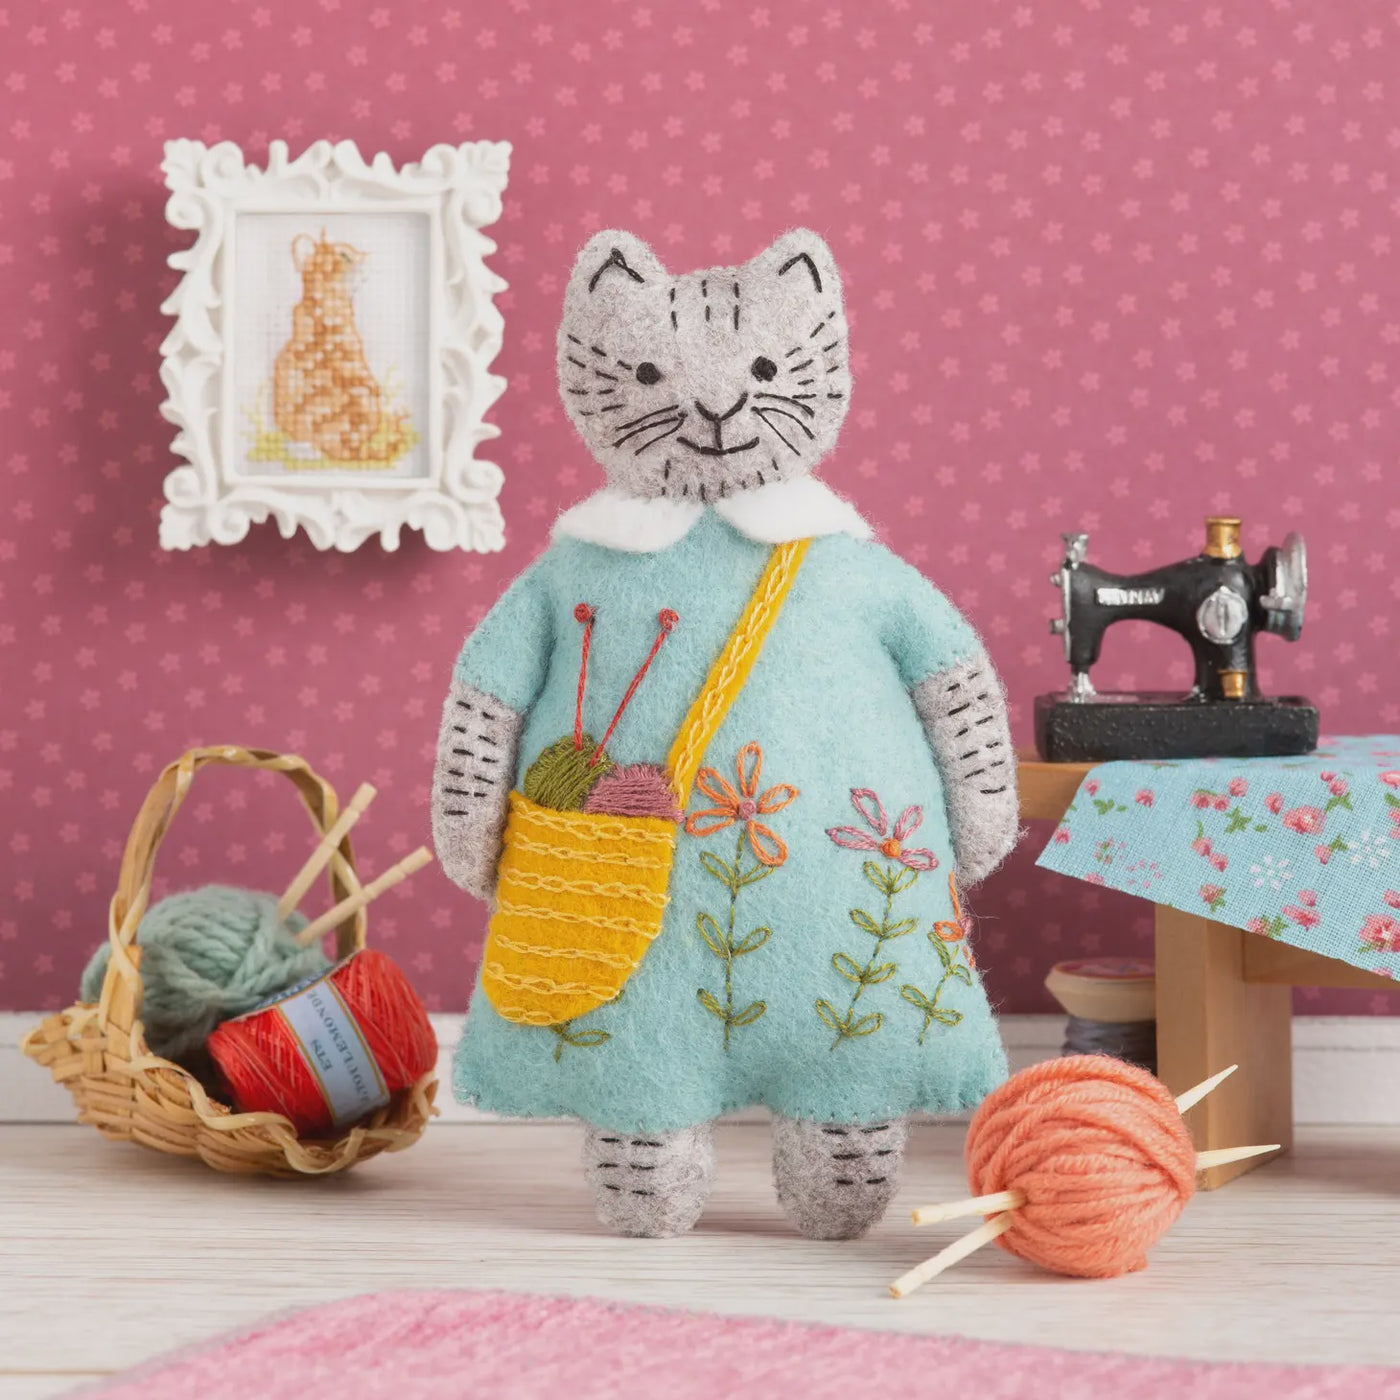 Mrs. Cat Loves Knitting Felt Cat Embroidery Kit